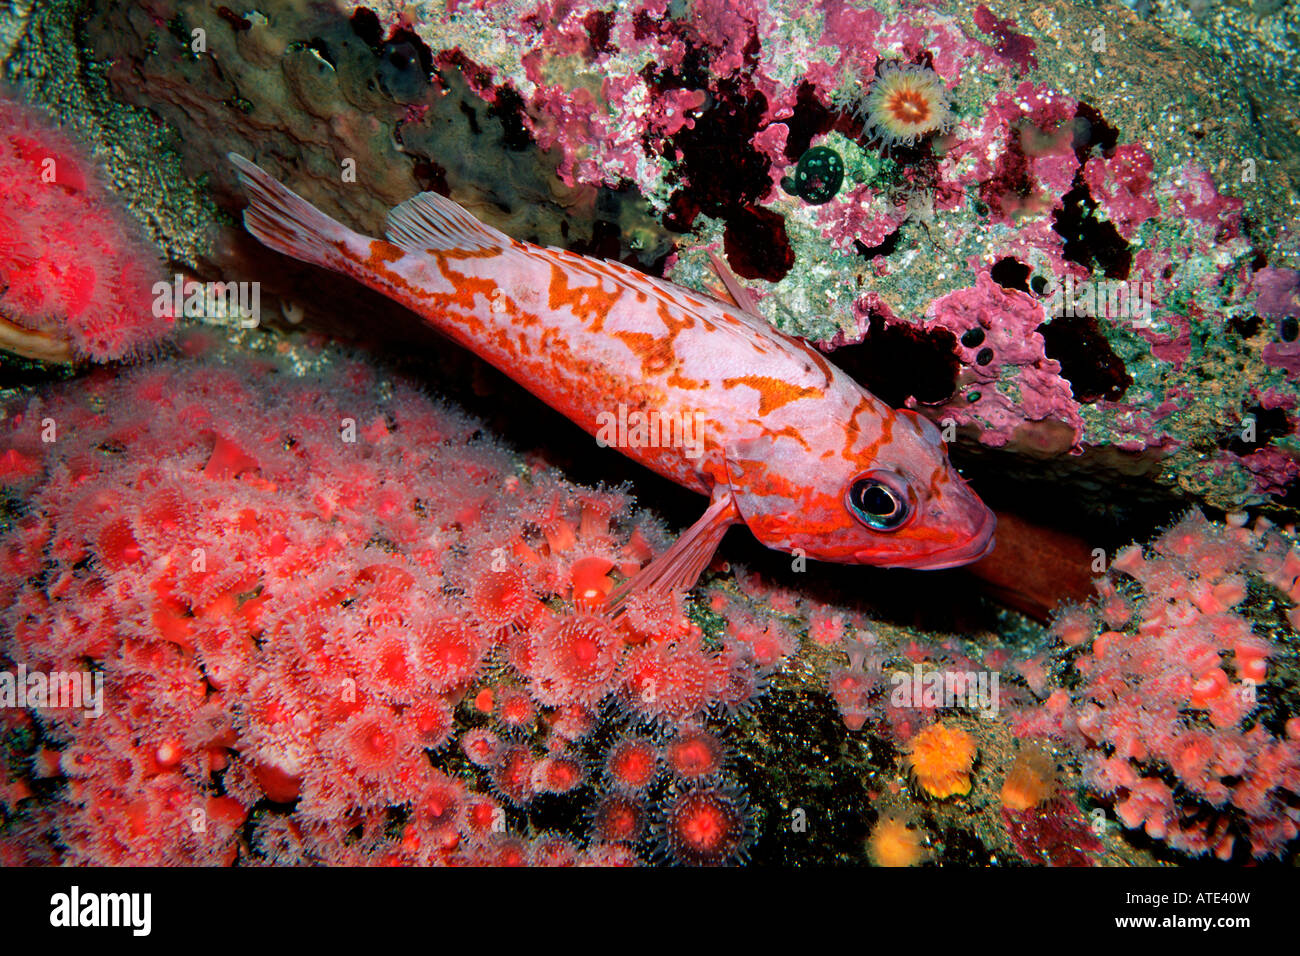 Canary rockfish Sebastes pinniger Stock Photo